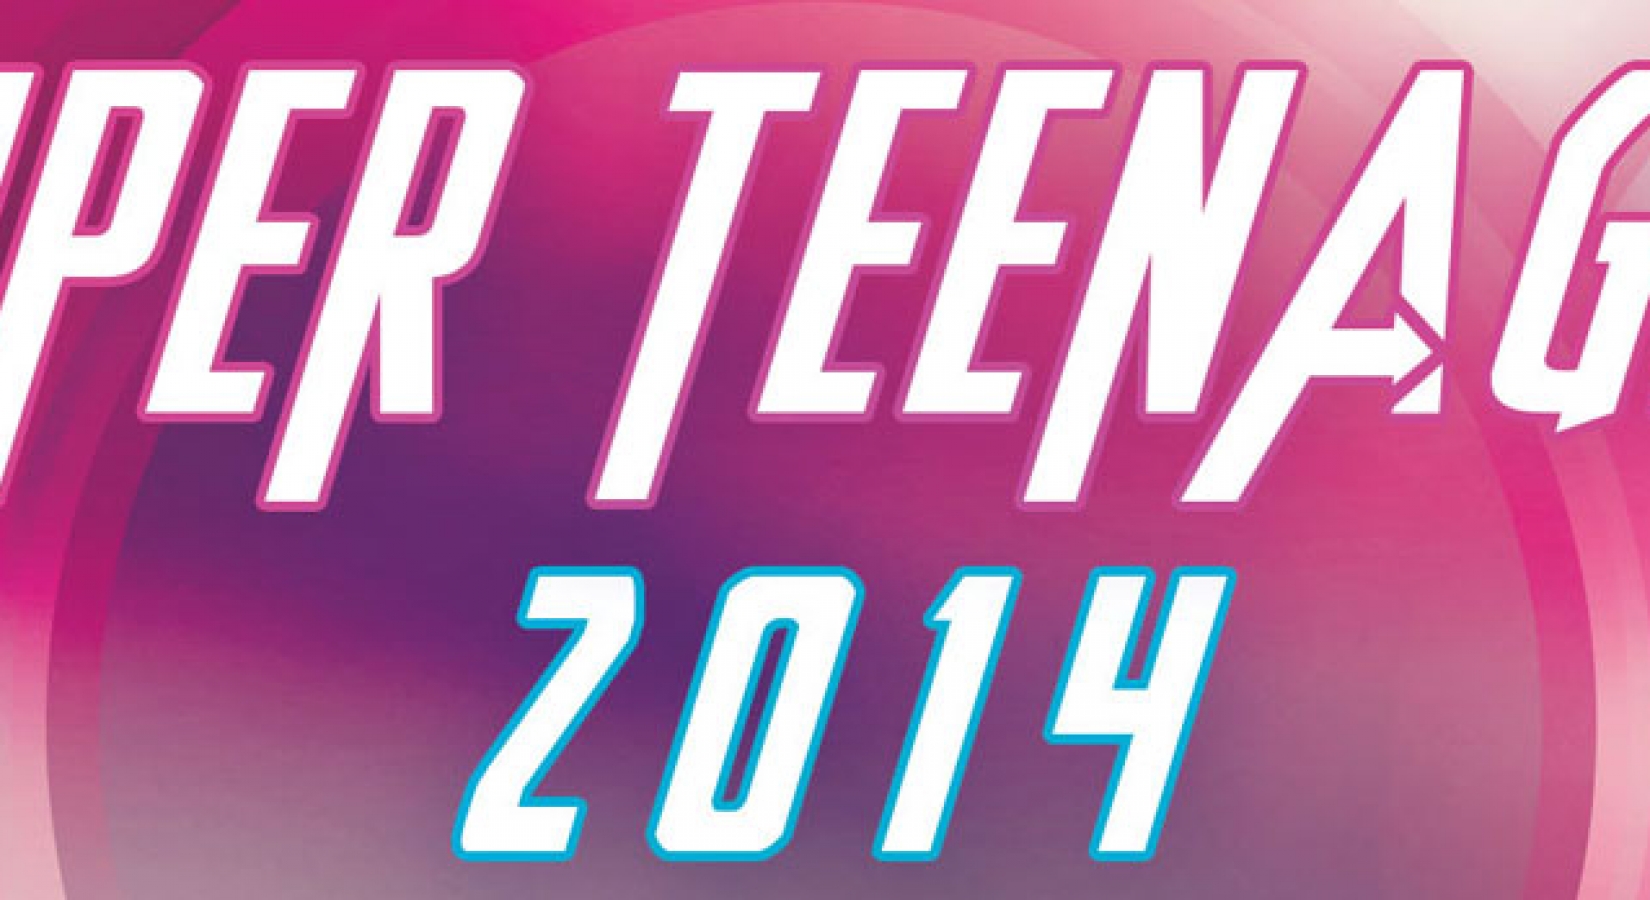 Super Teenager 2014 Teaser!